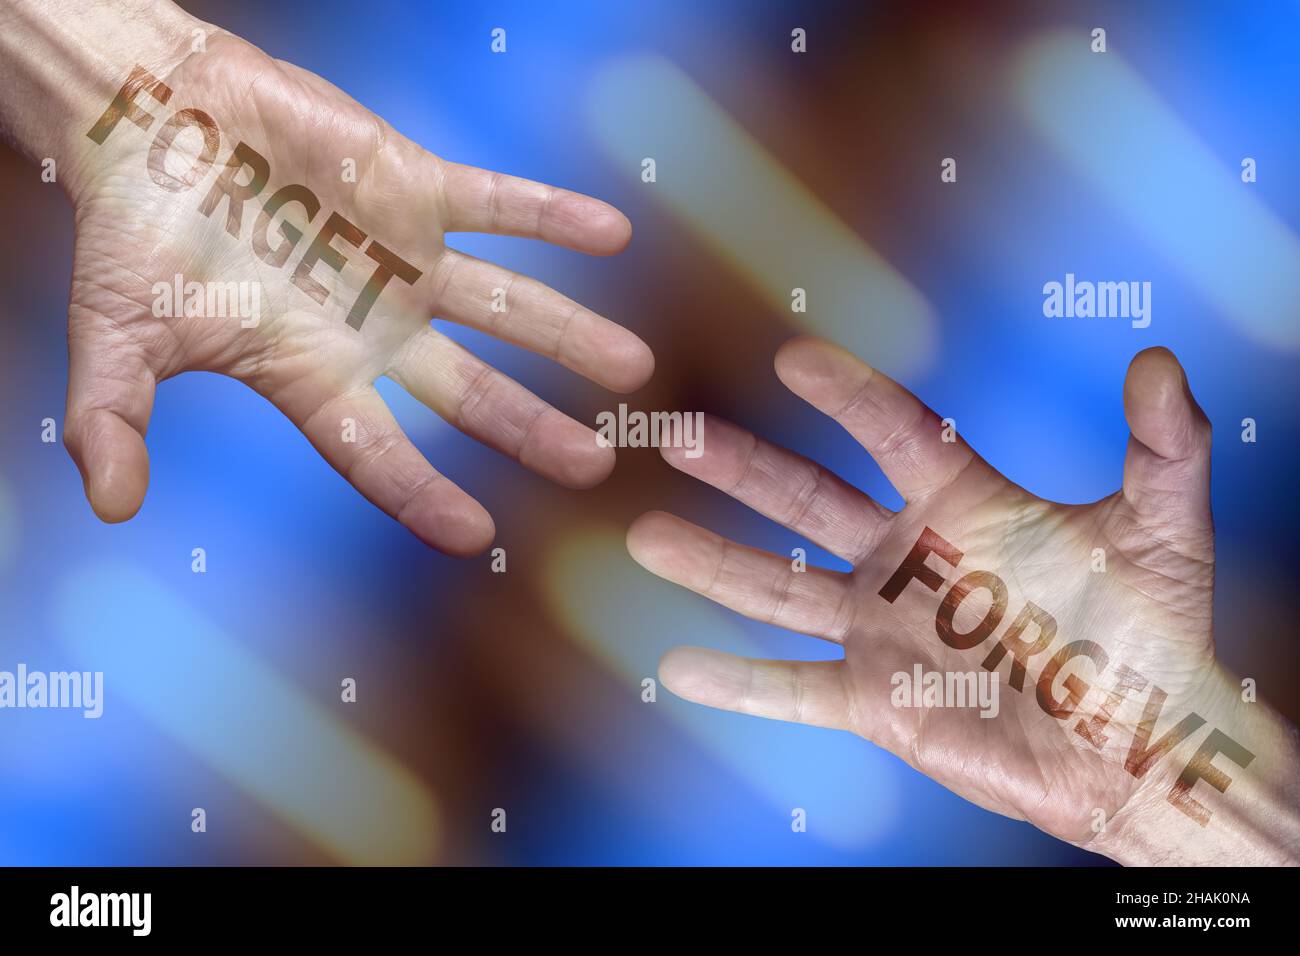 manos con perdón y olvidar texto sobre fondo azul abstracto, emociones, cuidado, armonía, sentimientos, relaciones humanas, concepto de imagen Foto de stock